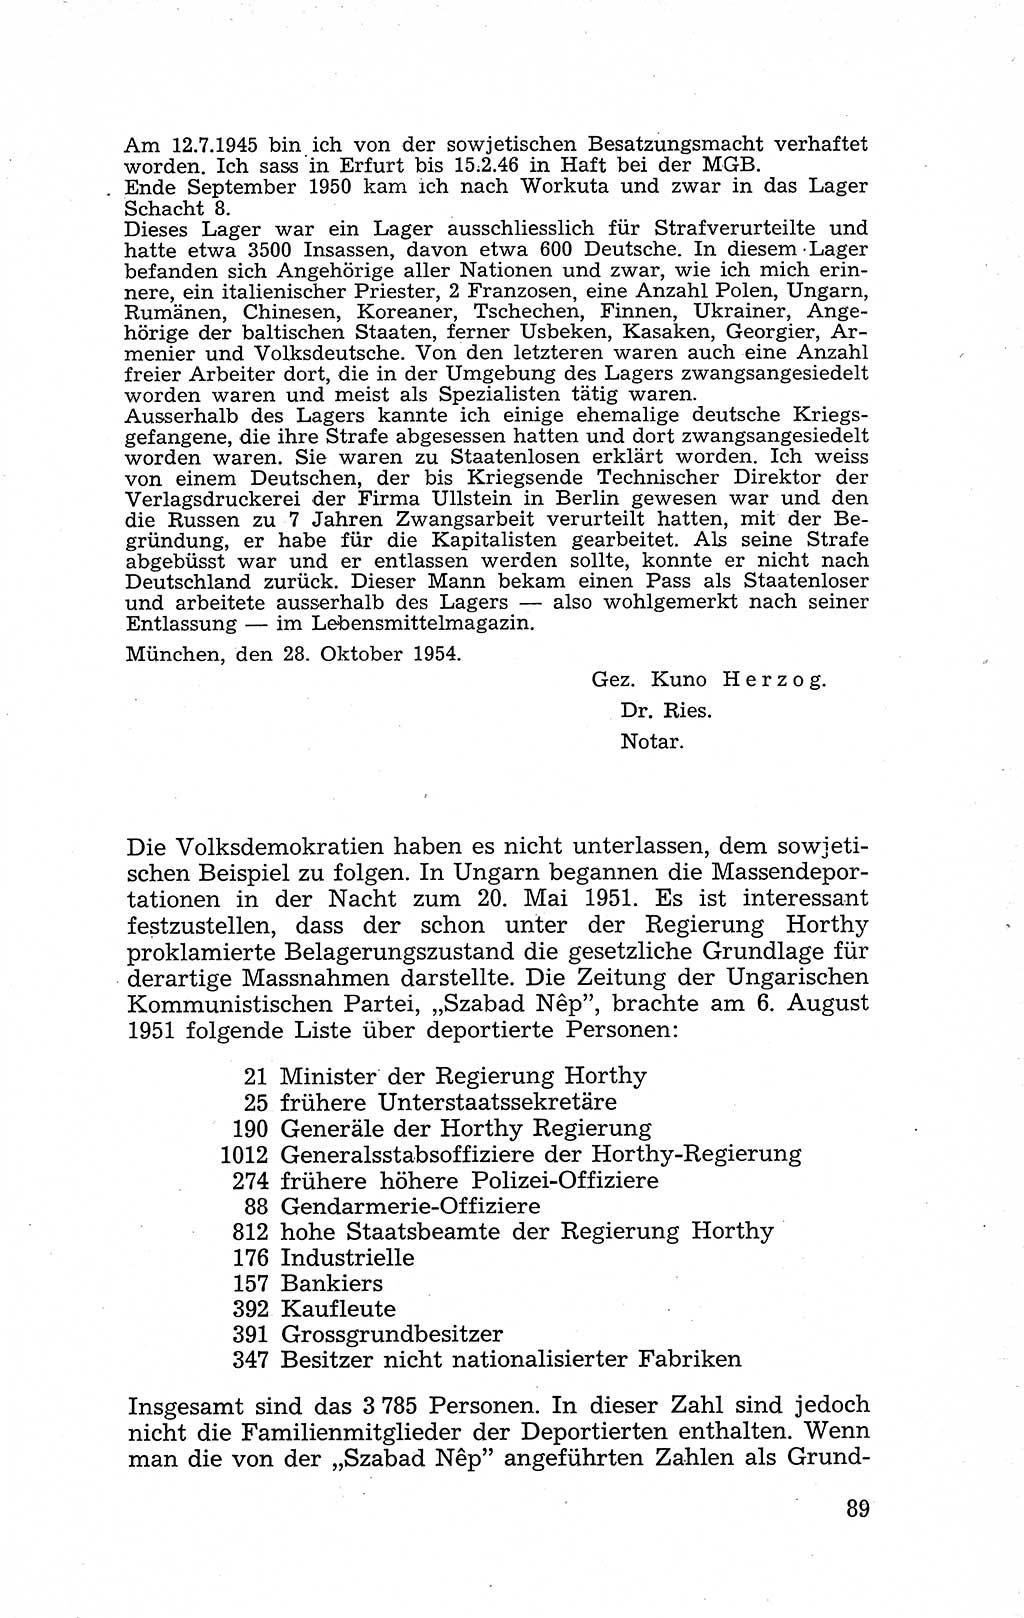 Recht in Fesseln, Dokumente, Internationale Juristen-Kommission [Bundesrepublik Deutschland (BRD)] 1955, Seite 89 (R. Dok. IJK BRD 1955, S. 89)